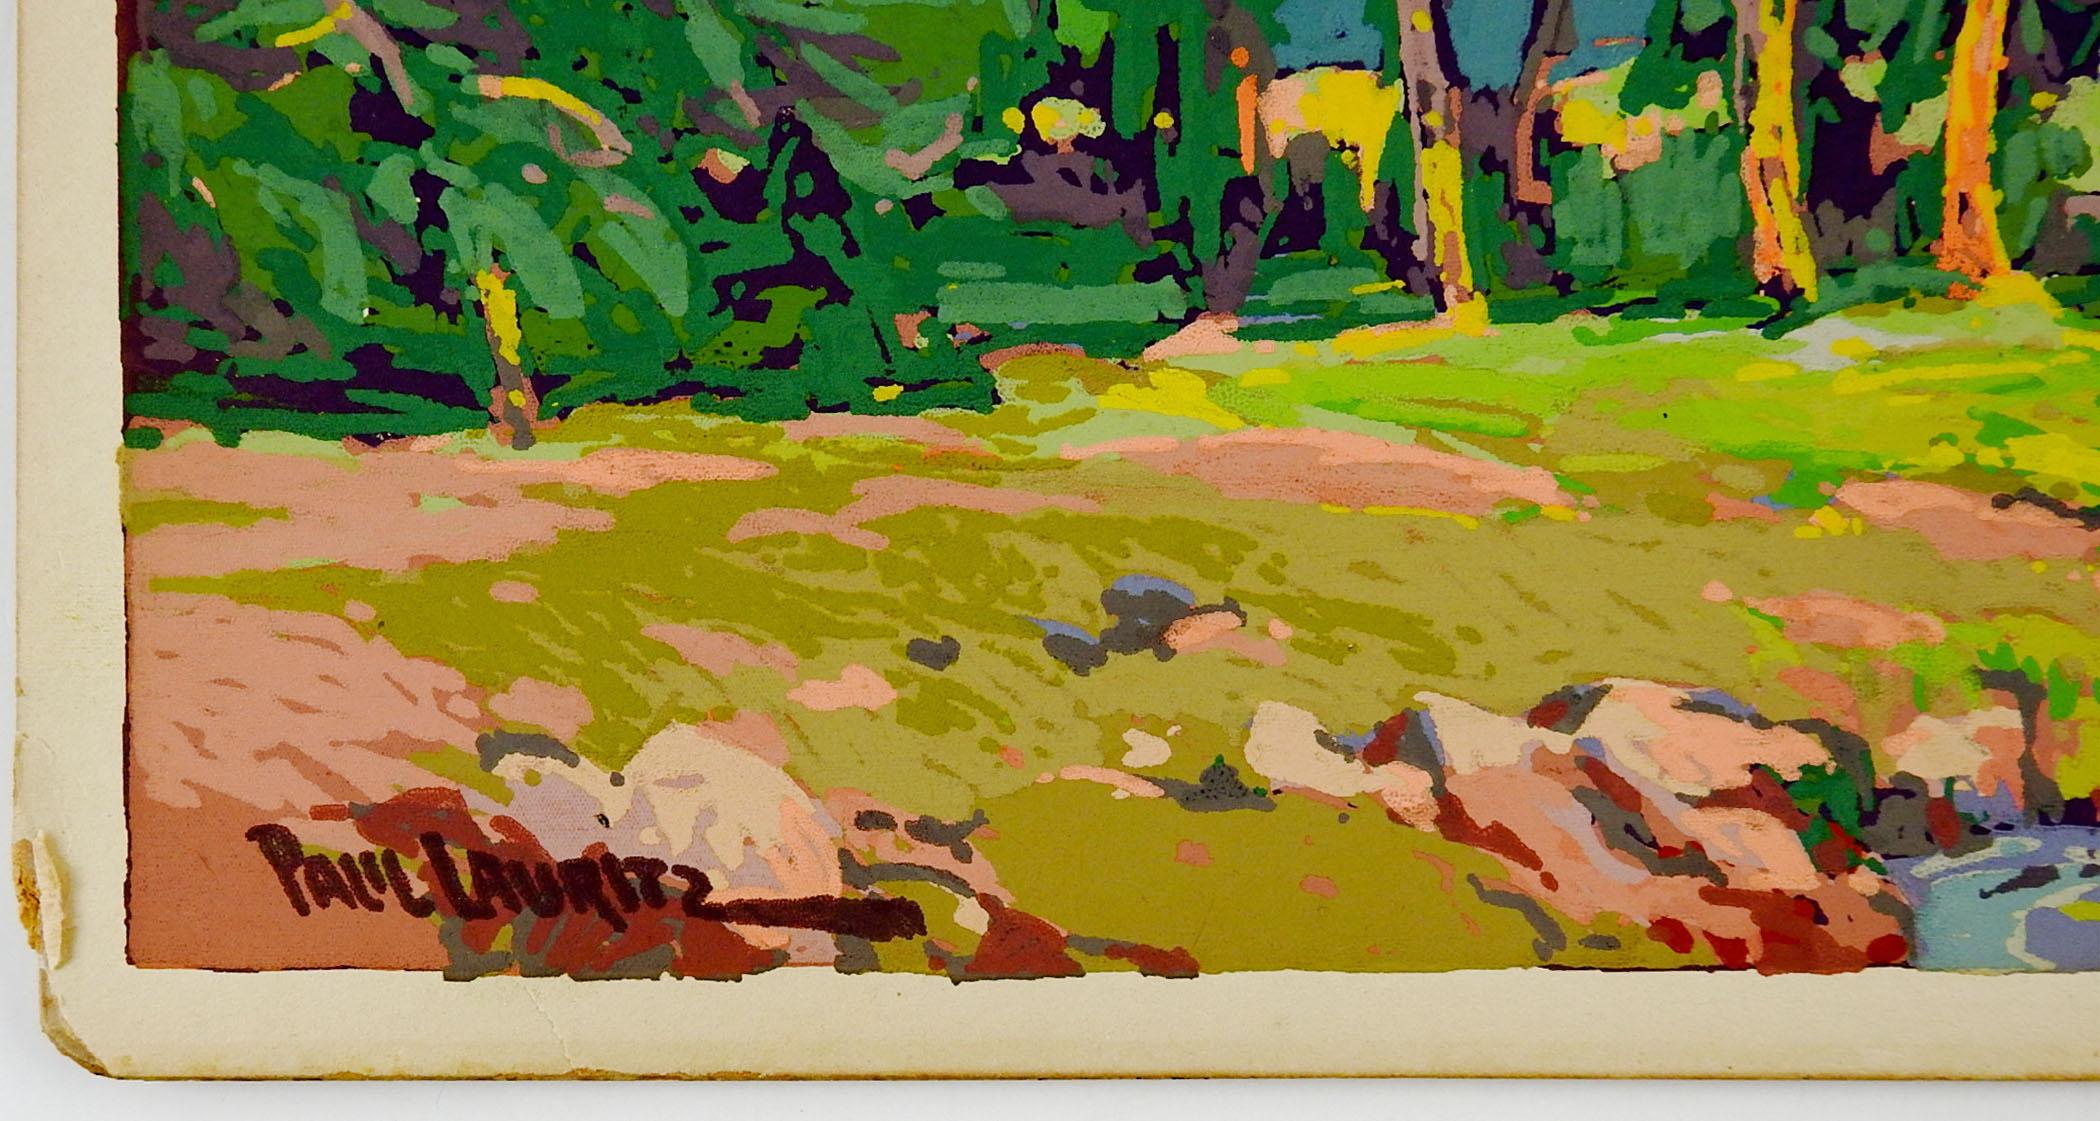 Vintage Eukalyptusbaum Landschaft Serigraphie auf Künstler Karton, um 1910 von Paul Lauritz (1889-1975) Kalifornien. Signiert im Druck in der linken unteren Ecke. Durch den dickeren Farbauftrag sieht es aus wie ein Gemälde und fühlt sich auch so an.